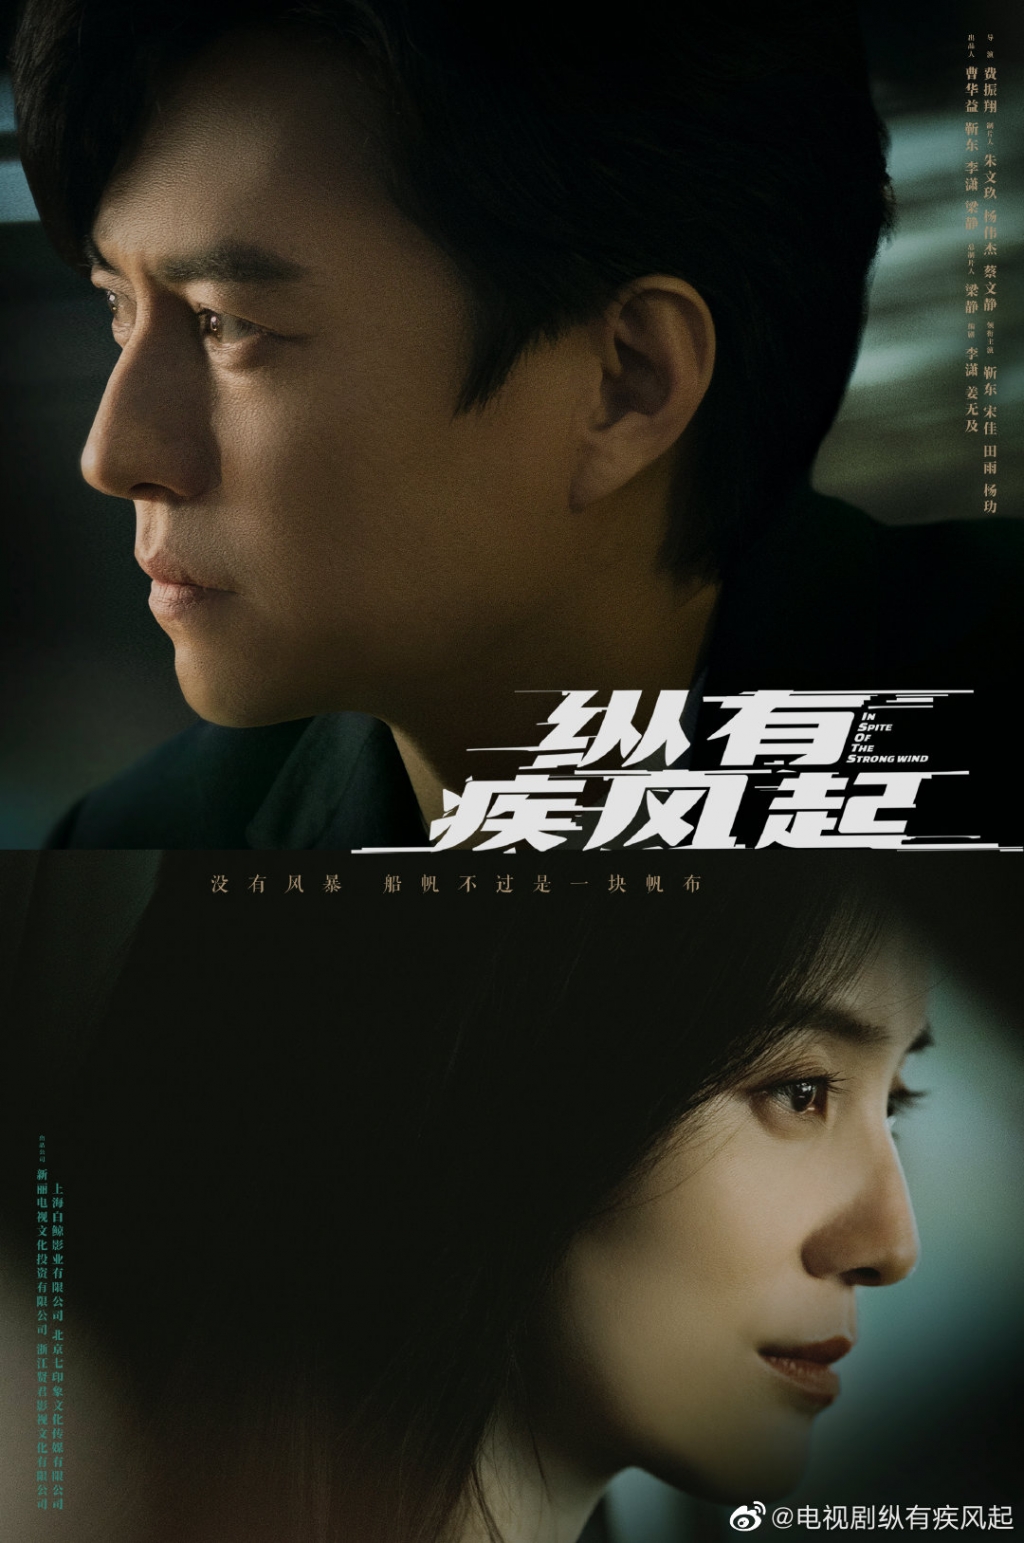 8 bộ phim Hoa ngữ chuẩn bị lên sóng trong quý 4 của Tencent: 'Lương Ngôn Tả Ý' của La Vân Hi và Trình Tiêu liệu có làm nên thảm họa?